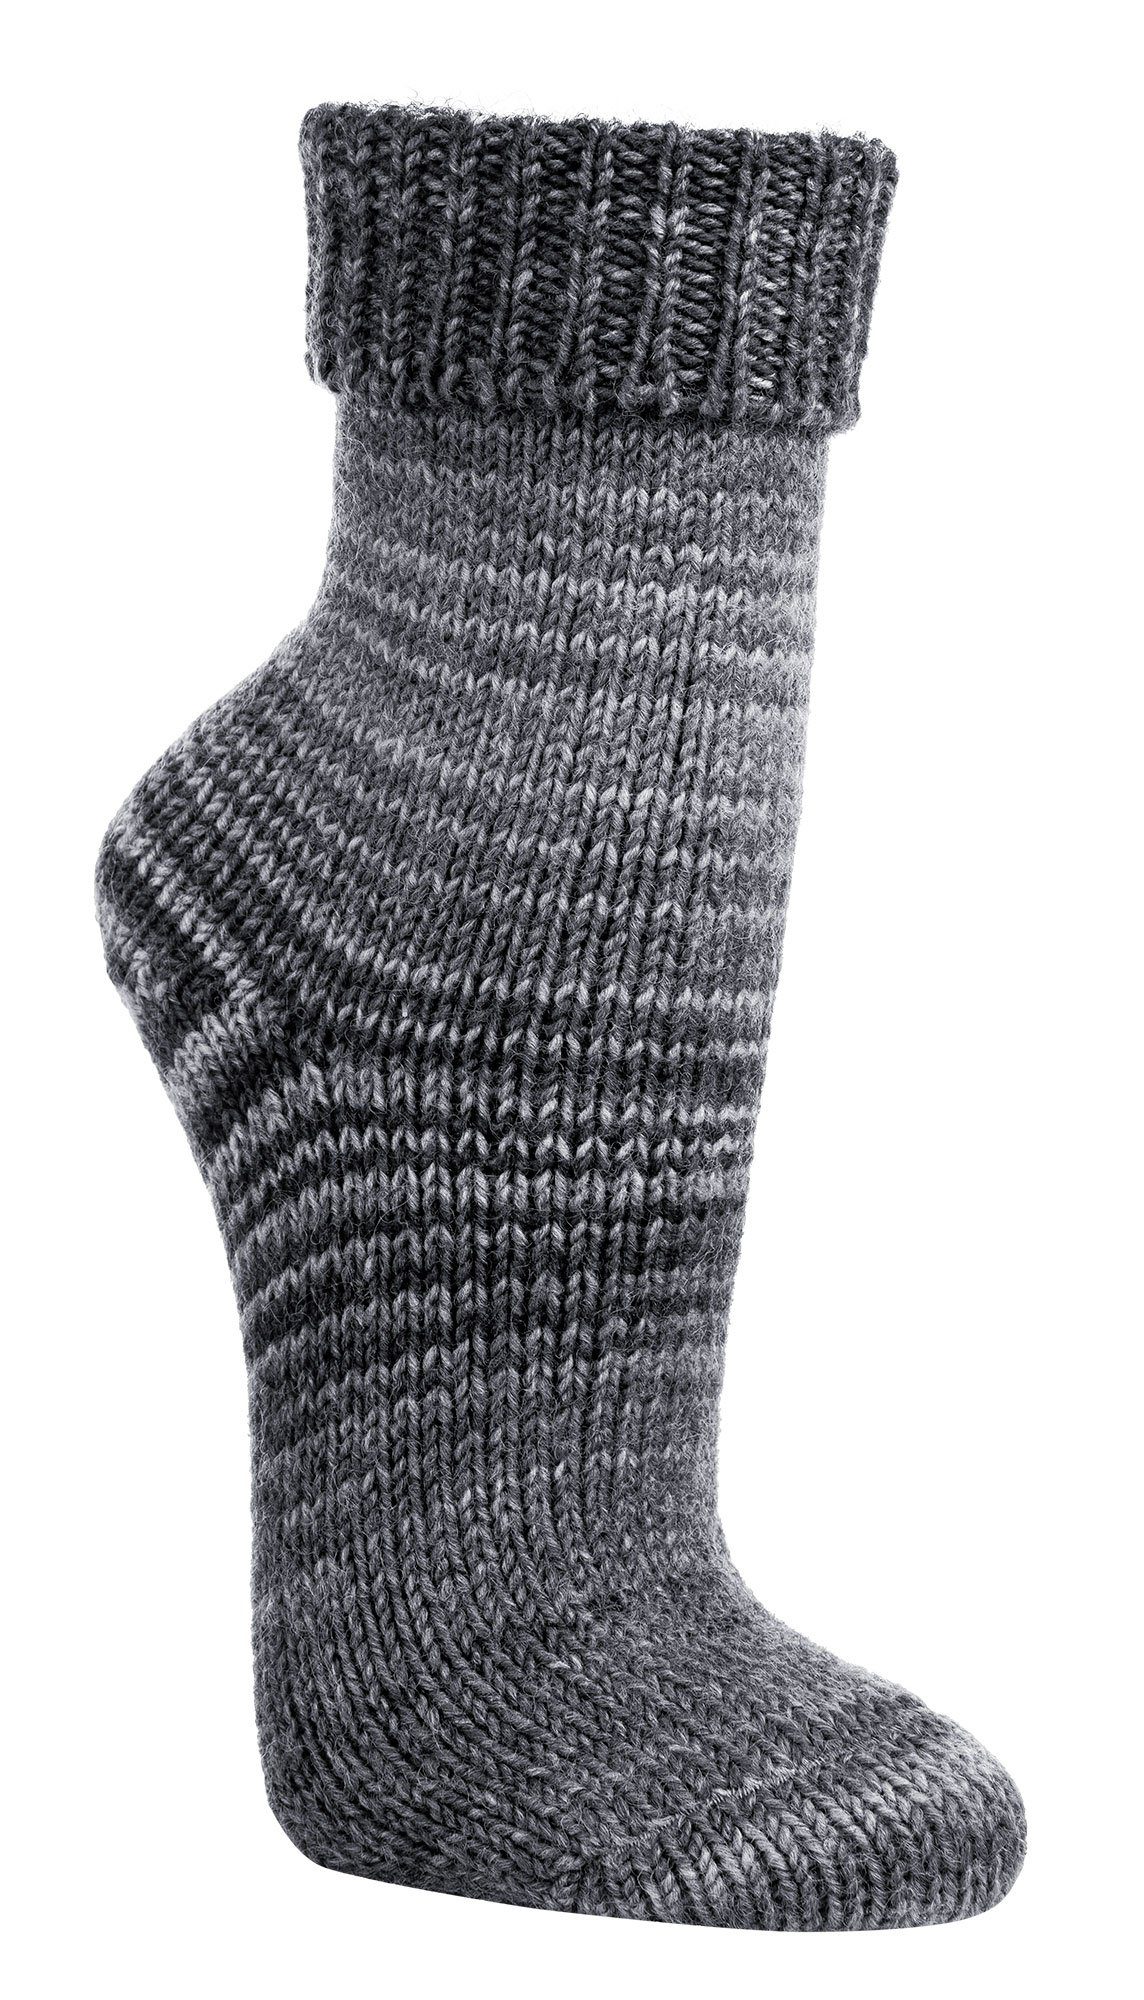 TippTexx 24 Umschlagsocken 2 Paar kuschelige Socken Wollsocken im Skandinavien-Style mit Umschlag Grau